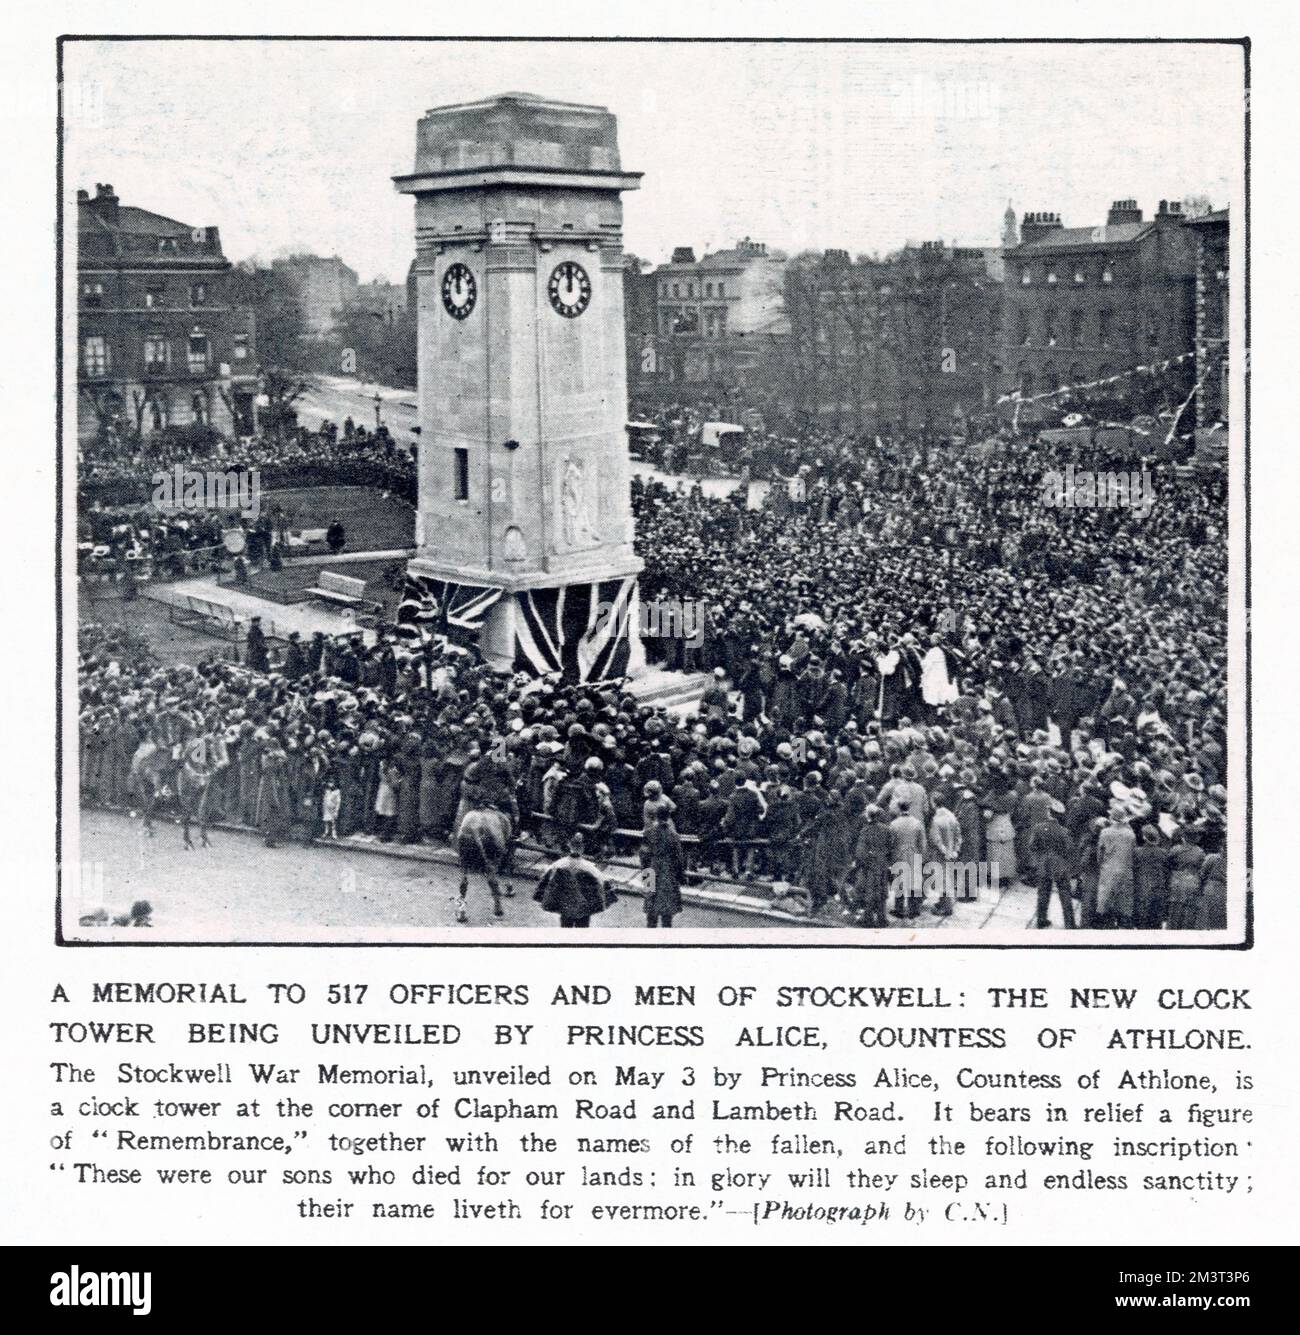 Une tour d'horloge - construite comme un mémorial aux 517 officiers et hommes tués pendant la première Guerre mondiale - a ouvert à Stockwell, dans le sud de Londres par la princesse Alice, comtesse d'Athlone. Banque D'Images